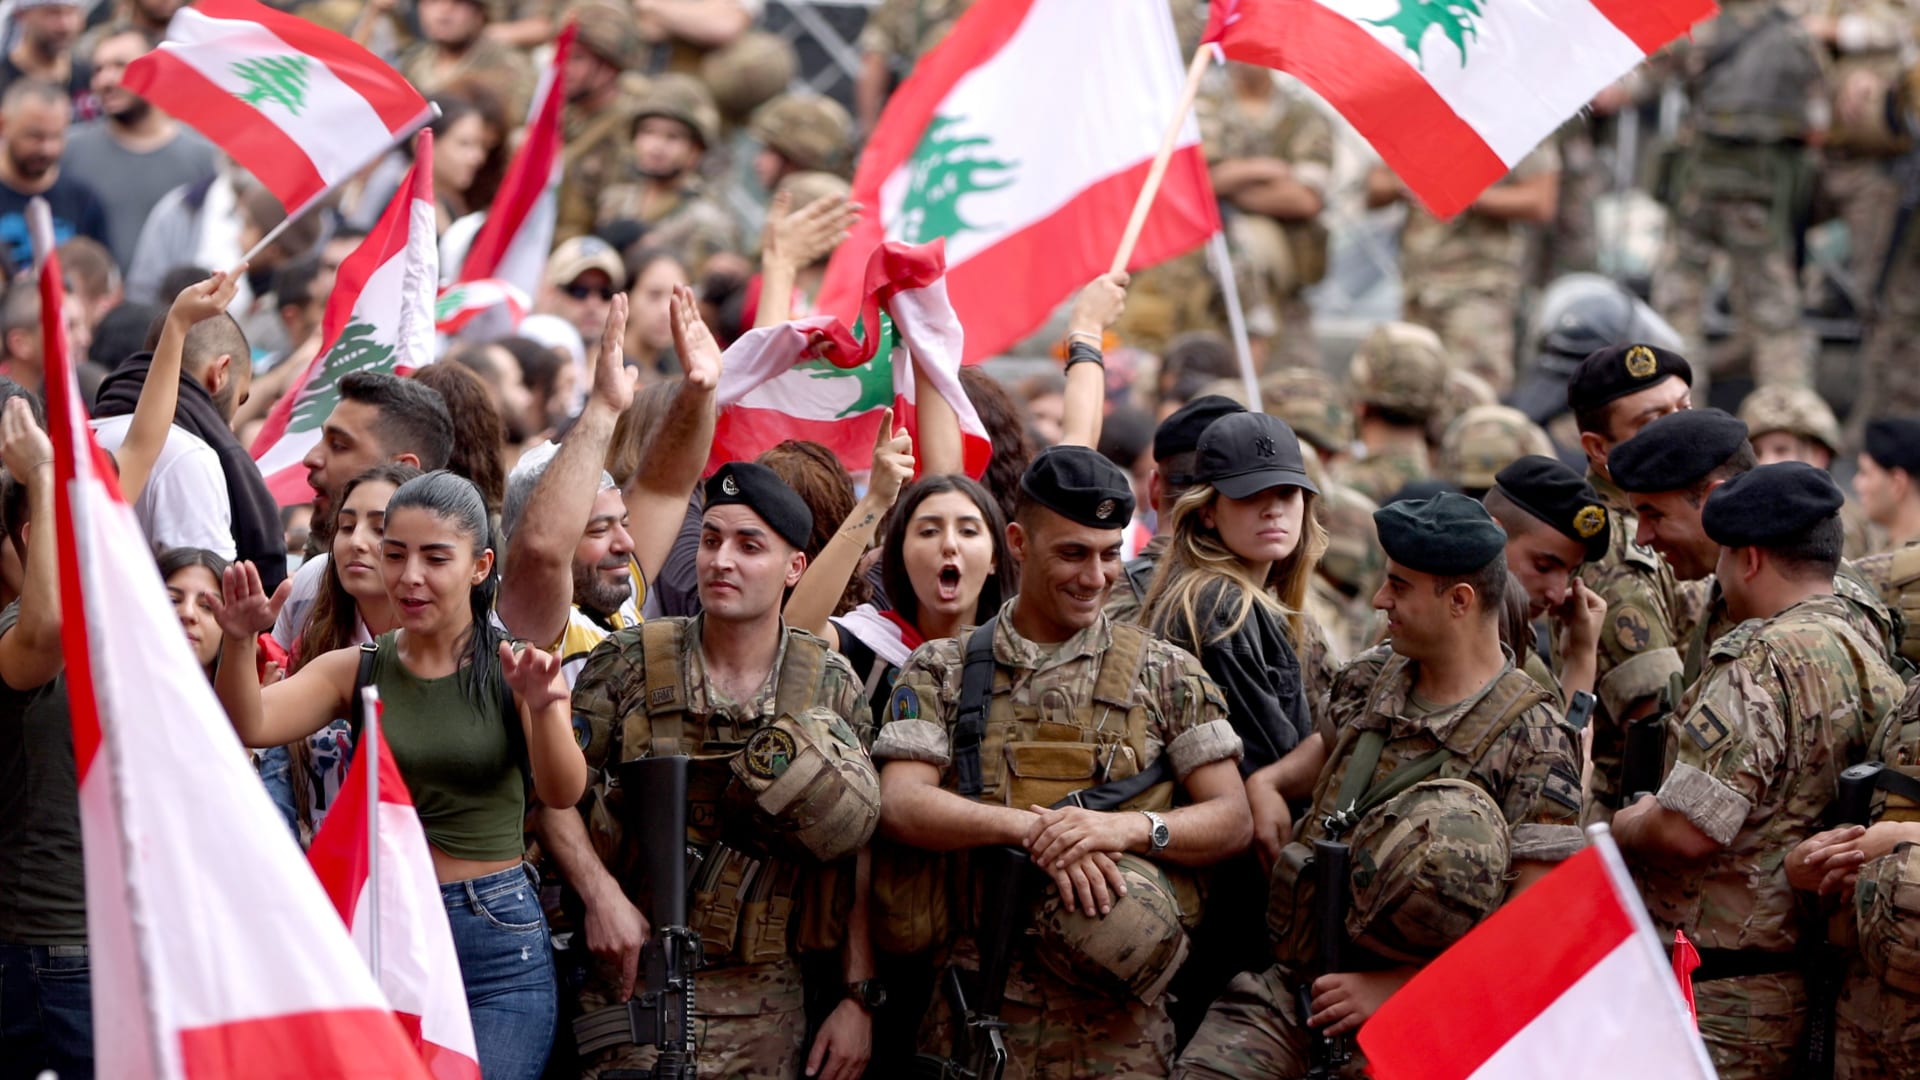 المرأة تتصدر مظاهرات لبنان.. "وفتاة ثائرة" تصبح عروس الساحات